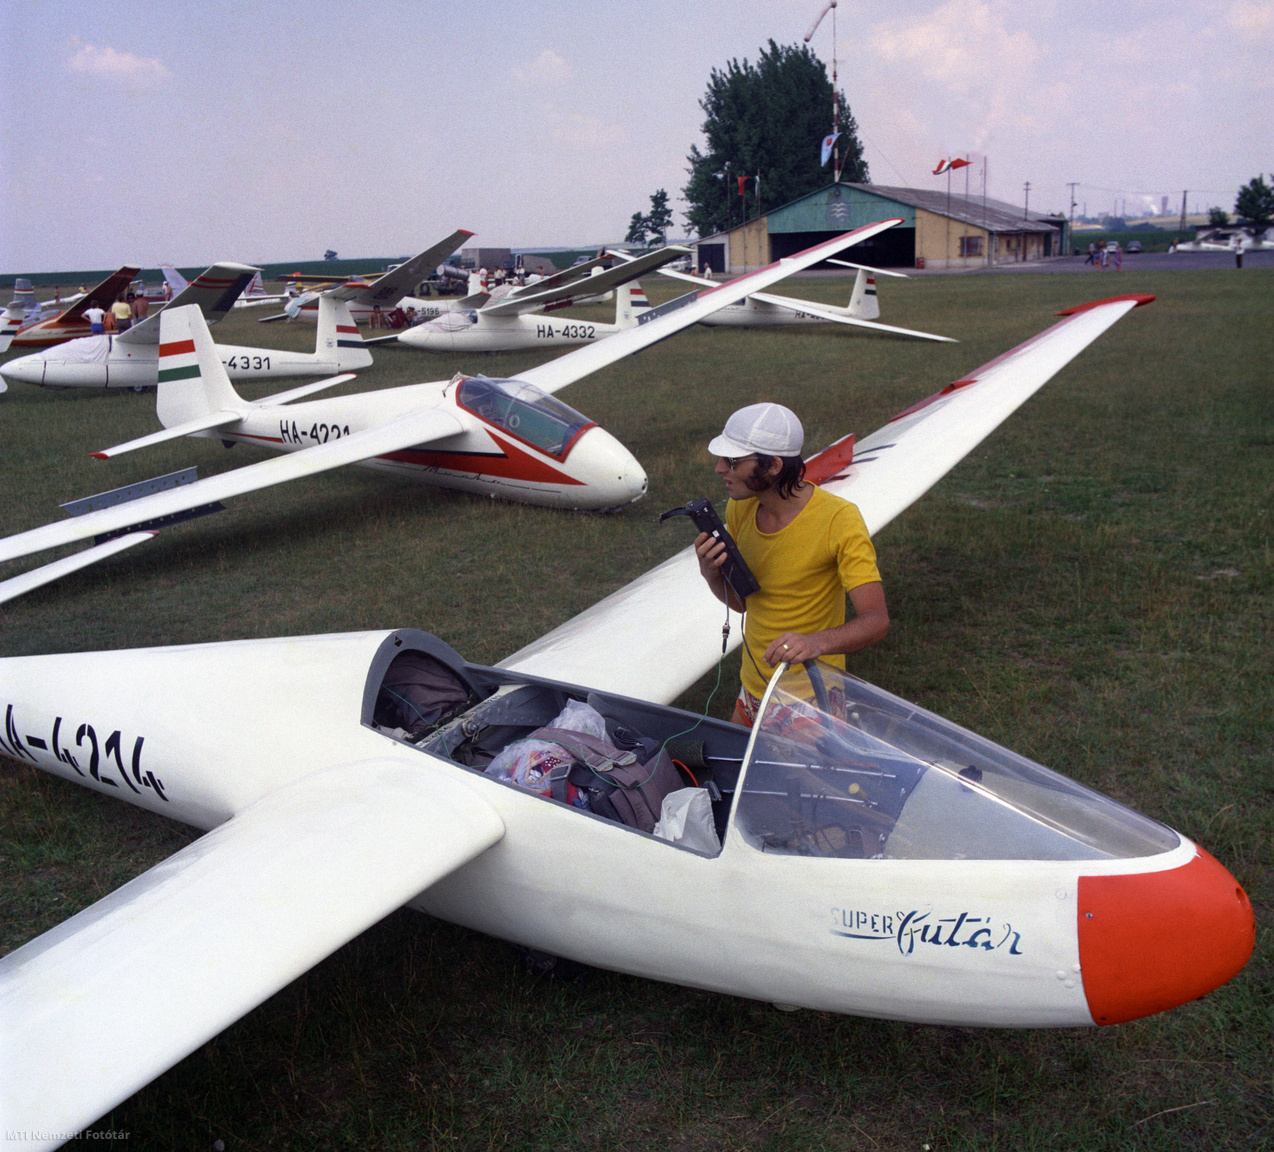 1976. július 4. Folyik a rádiók ellenőrzése a felszállásra váró vitorlázó repülőgépeken a dunaújvárosi (Kisapostag) MHSZ (Magyar Honvédelmi Szövetség) sportrepülőtéren az országos válogató bajnoksága mezőnyében. Az előtérben egy Rubik R-22S Super Futár típusú vitorlázó repülőgép, mögötte egy lengyel gyártású SZD-12 Mucha.